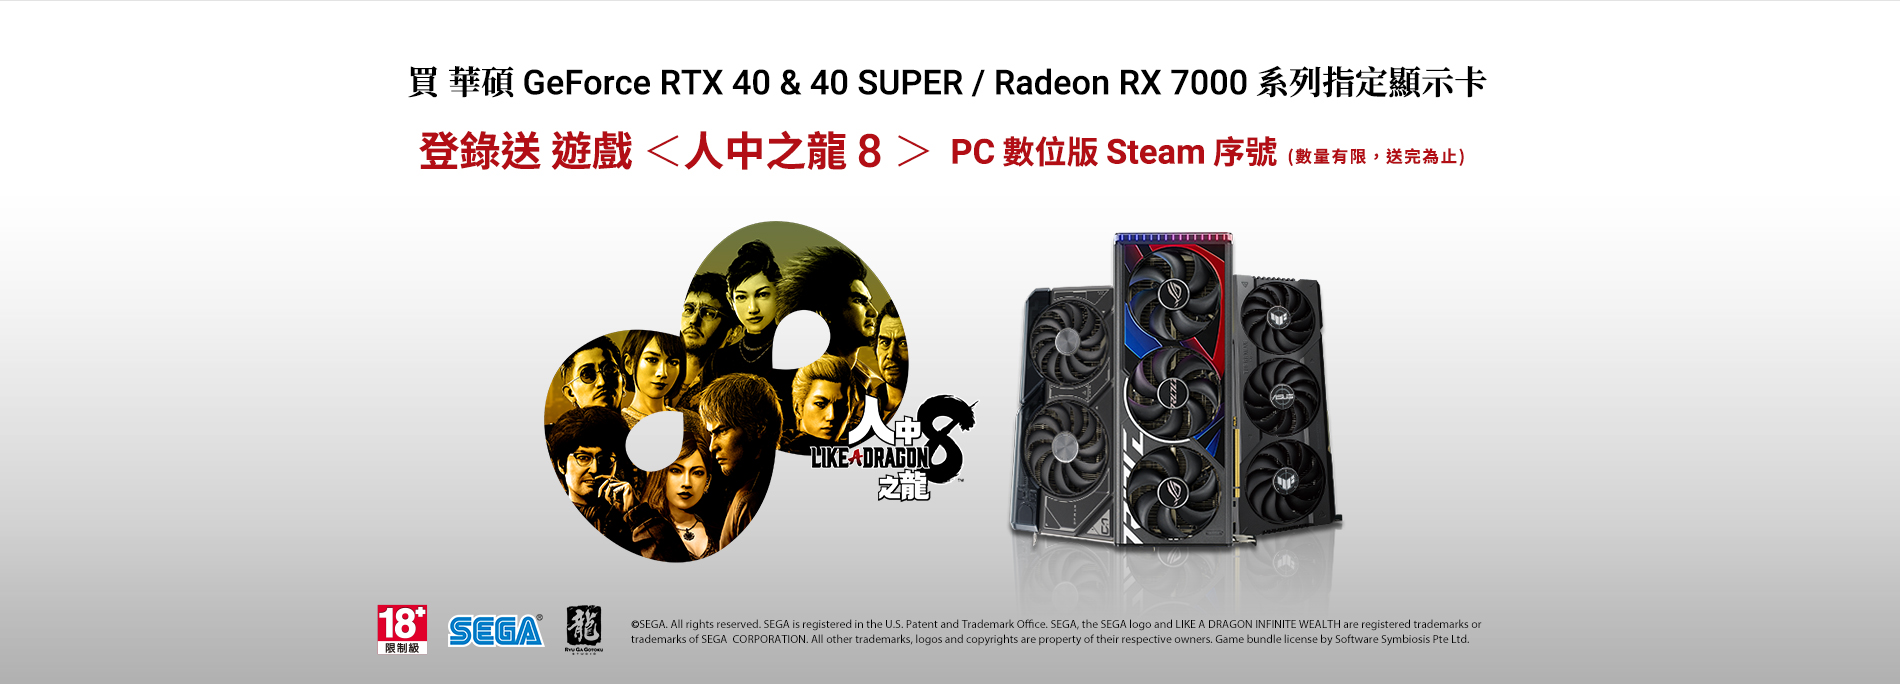 2024/05/13 - 2024/07/08 購買華碩 GeForce RTX 40 或 40 SUPER / Radeon RX 7000 系列指定顯示卡，全球官網登錄送遊戲《人中之龍8》 PC數位版 Steam 序號 (數量有限，送完為止)。